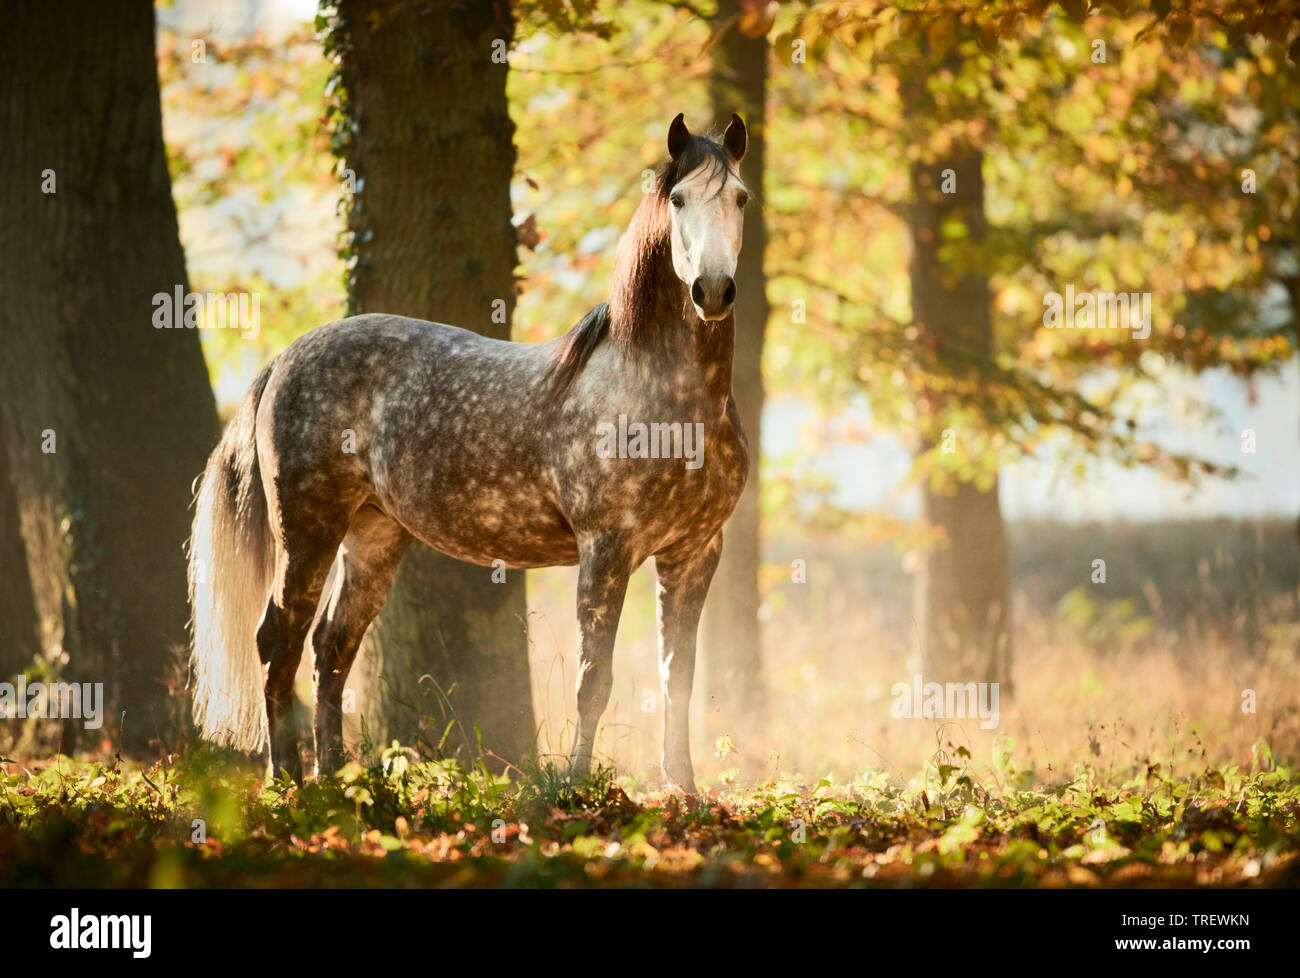 Cheval Espagnol pur, andalou. Gris pommelé des profils debout dans une forêt en automne. Allemagne Banque D'Images